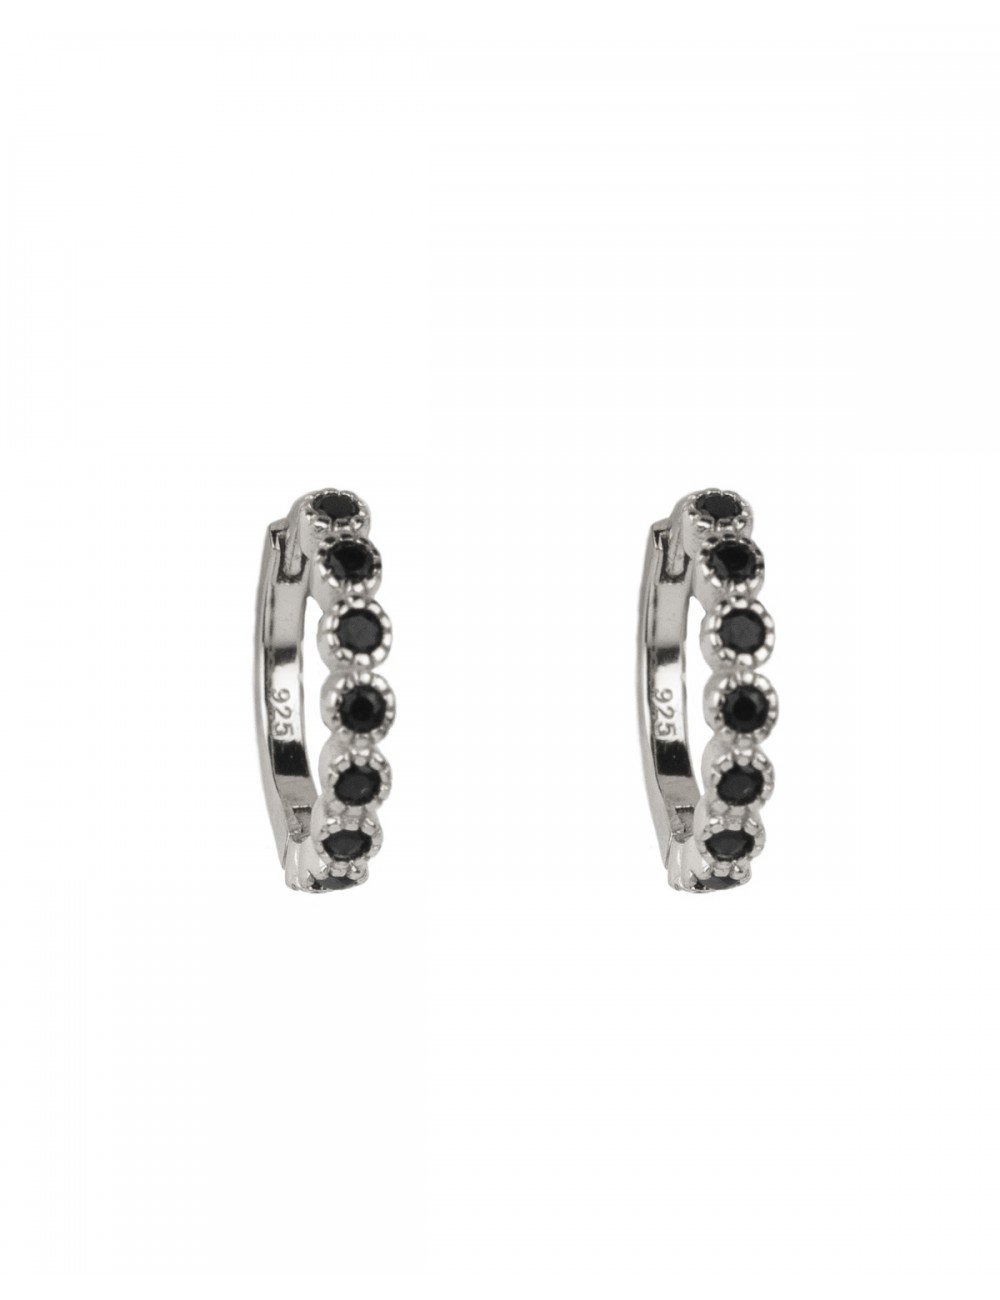 Sun hoops silver - Silver earrings - Trium Jewelry